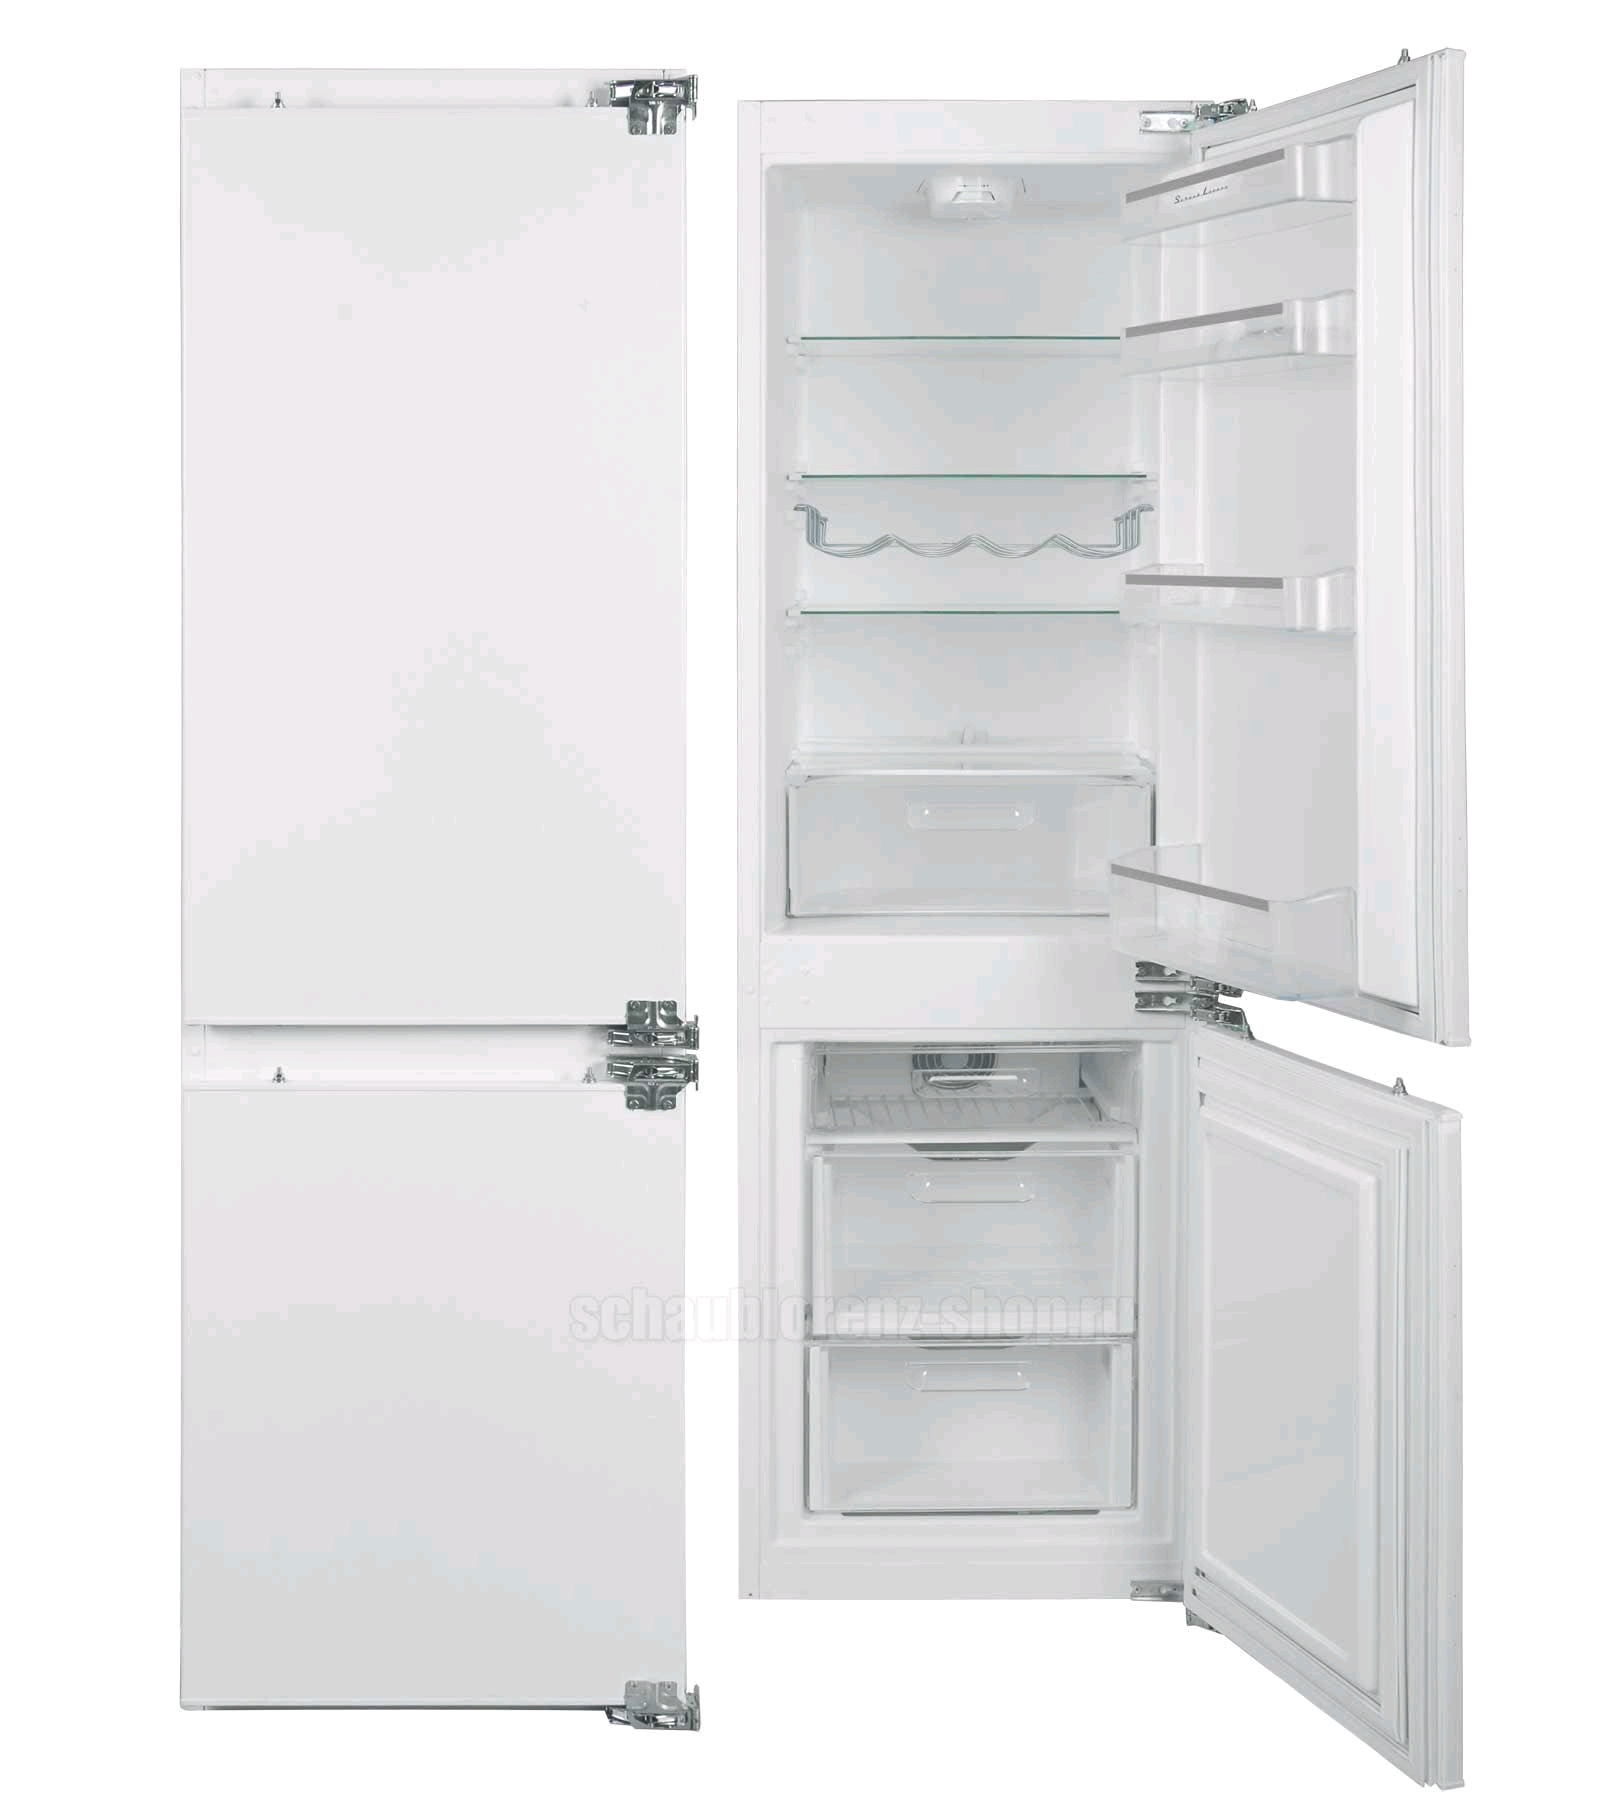 Schaub Lorenz SLU E235W4 холодильник встраиваемый